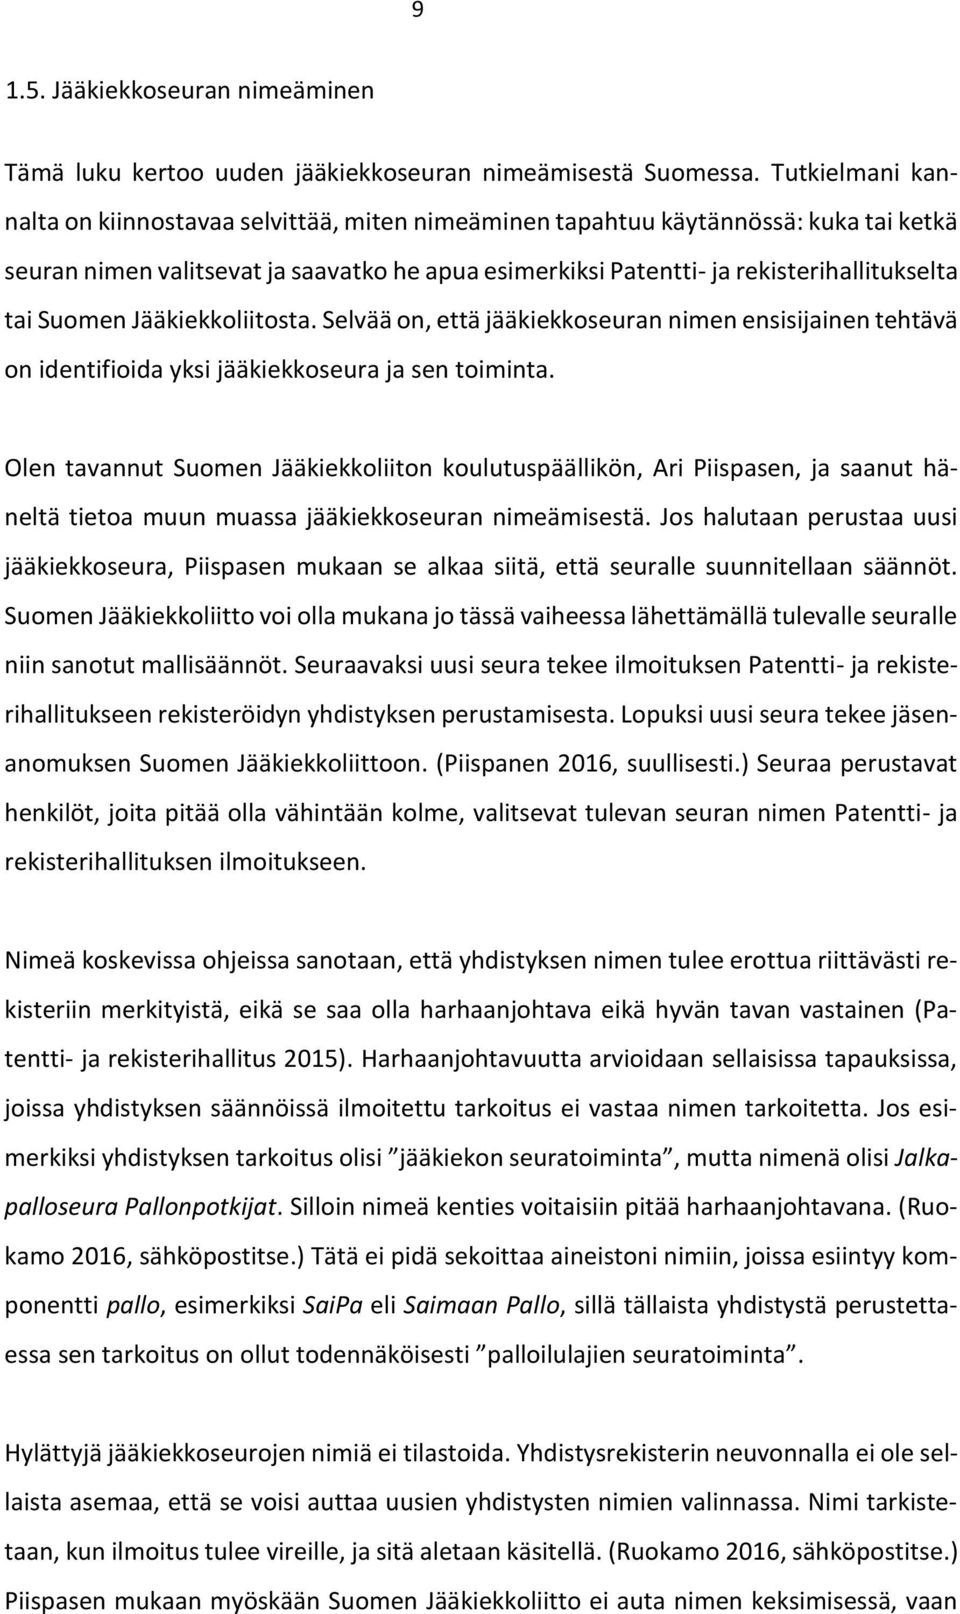 Suomen Jääkiekkoliitosta. Selvää on, että jääkiekkoseuran nimen ensisijainen tehtävä on identifioida yksi jääkiekkoseura ja sen toiminta.